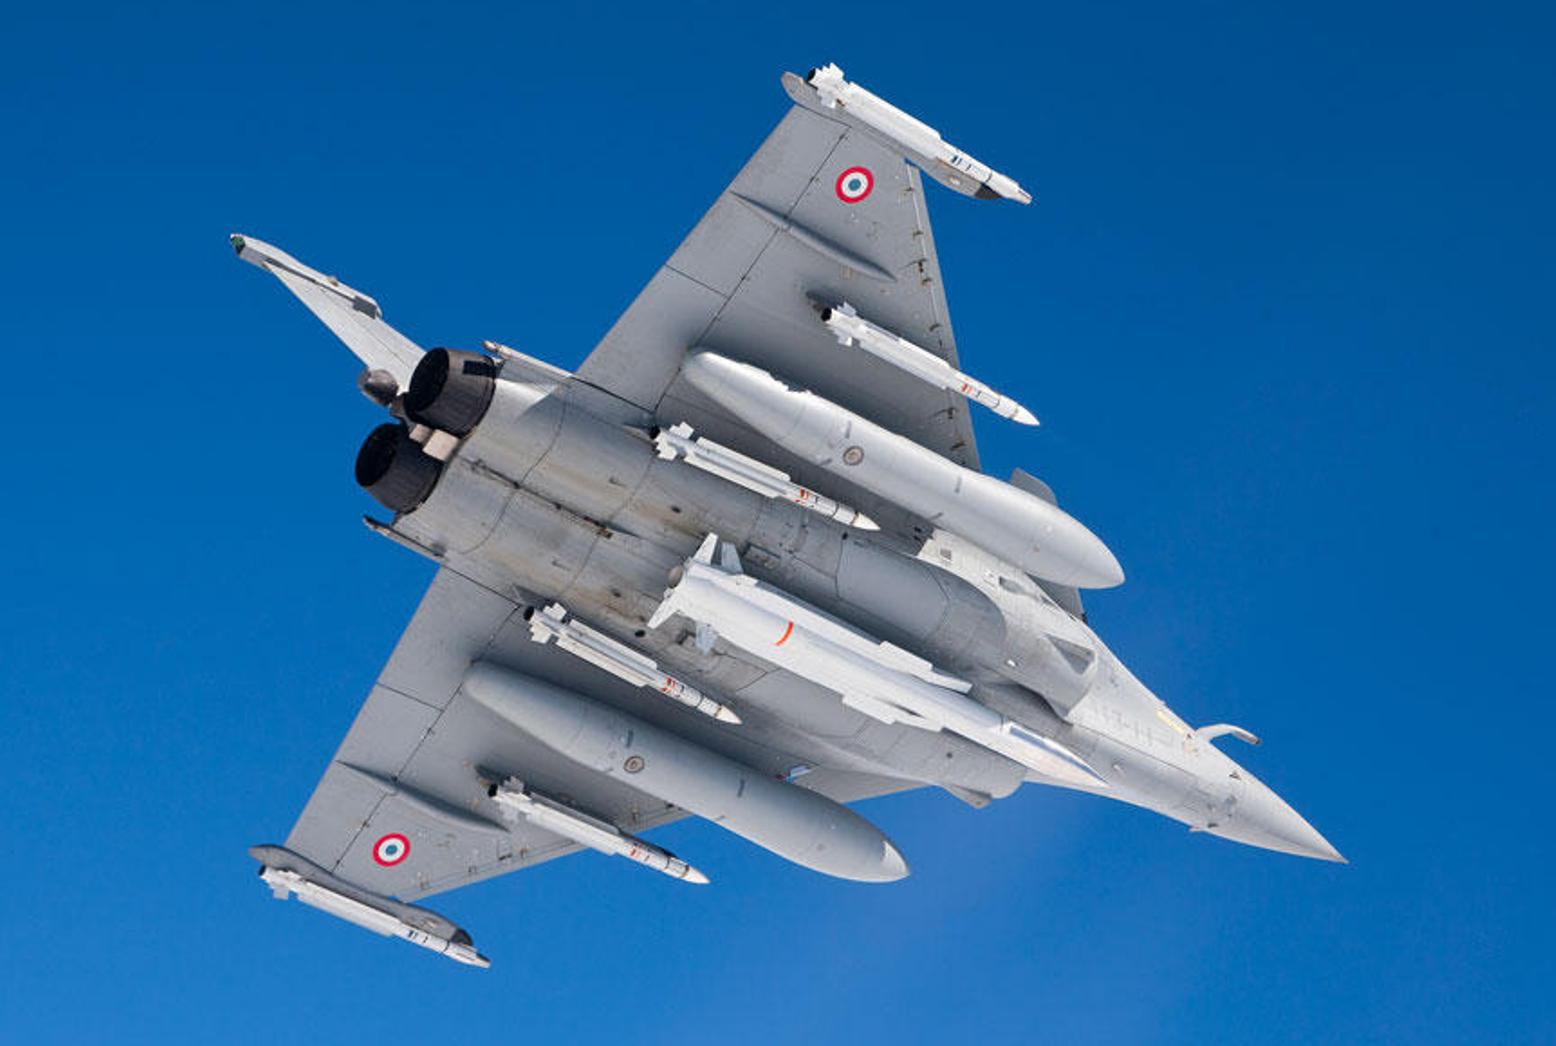 تسليح الرافال .. رعــــــــــــــــــب Air-Sol+Moyenne+Port%C3%A9e-Am%C3%A9lior%C3%A9+%28ASMP-A%29++French+air-launched+nuclear+missile+Dassault+Rafale+French+twin-engine+delta-wing+fighter+aircraft+%281%29